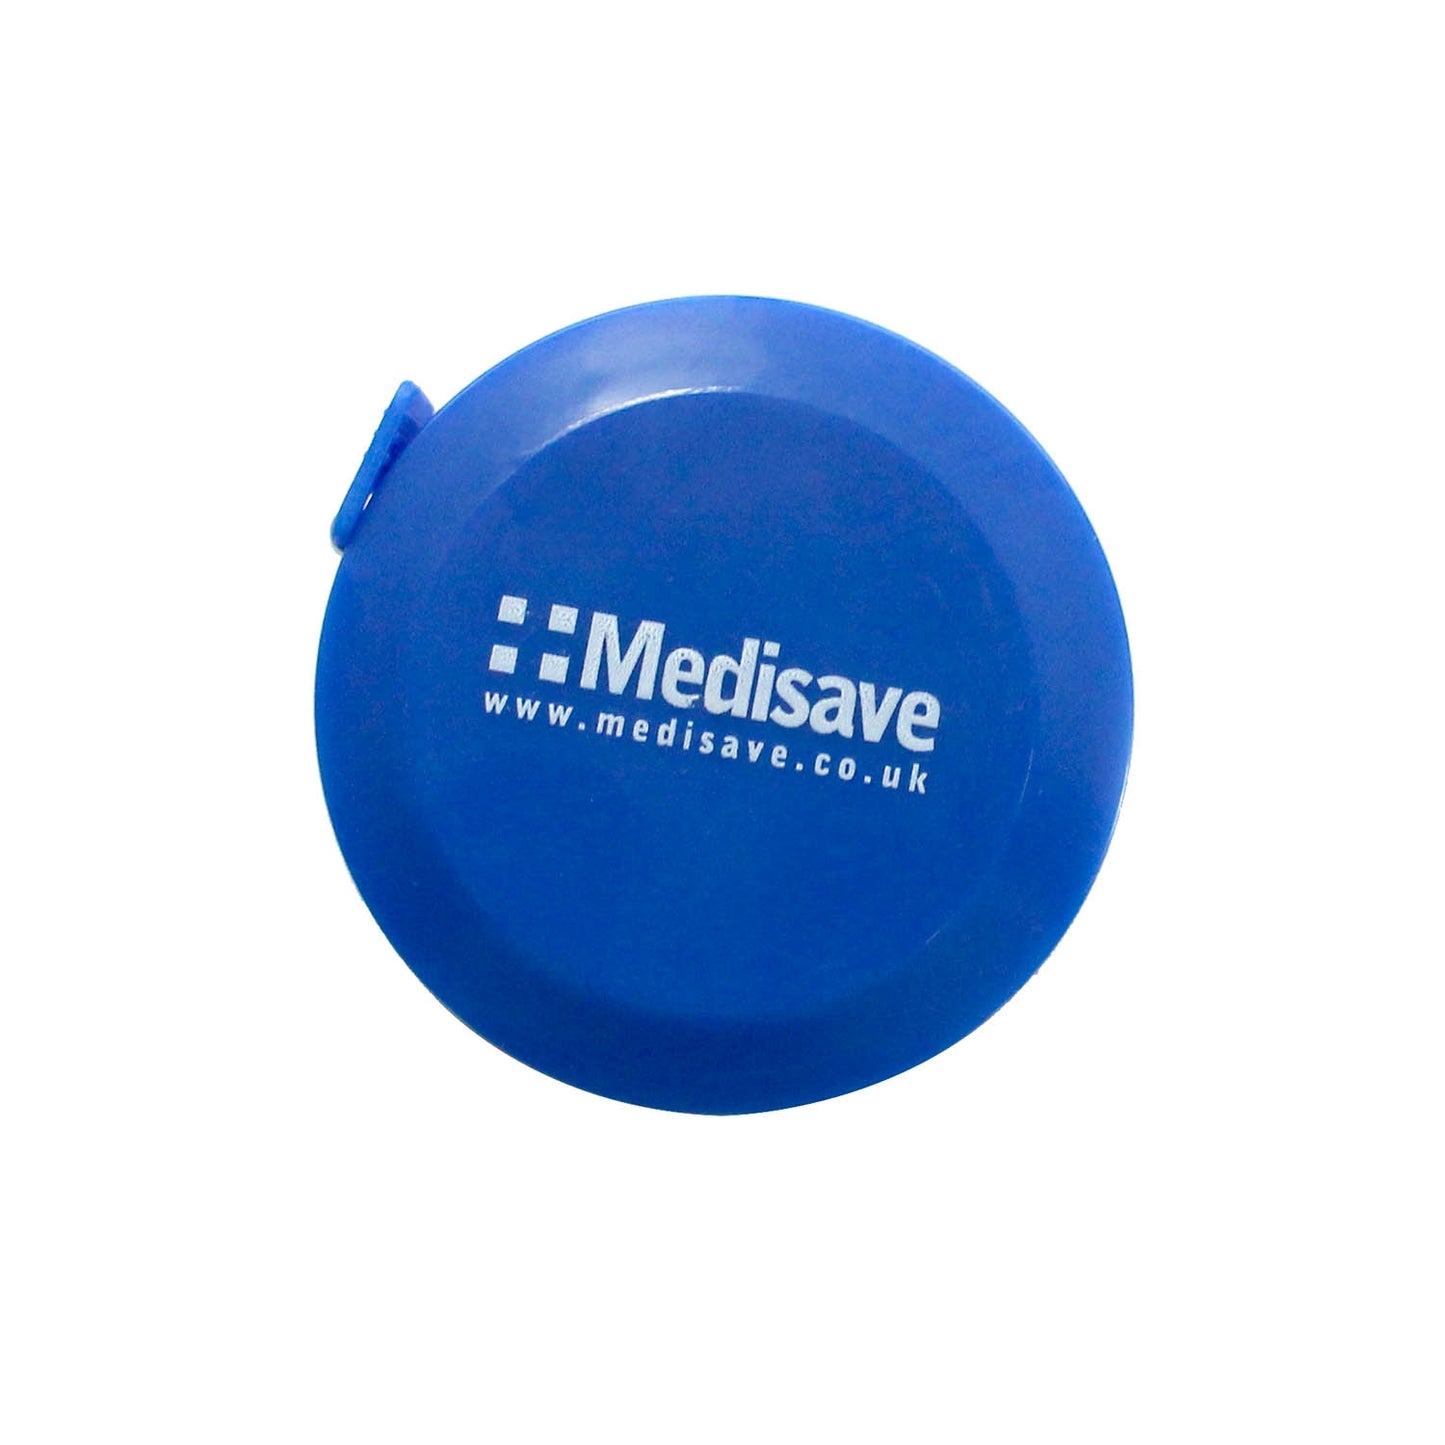 Medisave Nurses Tape Measure